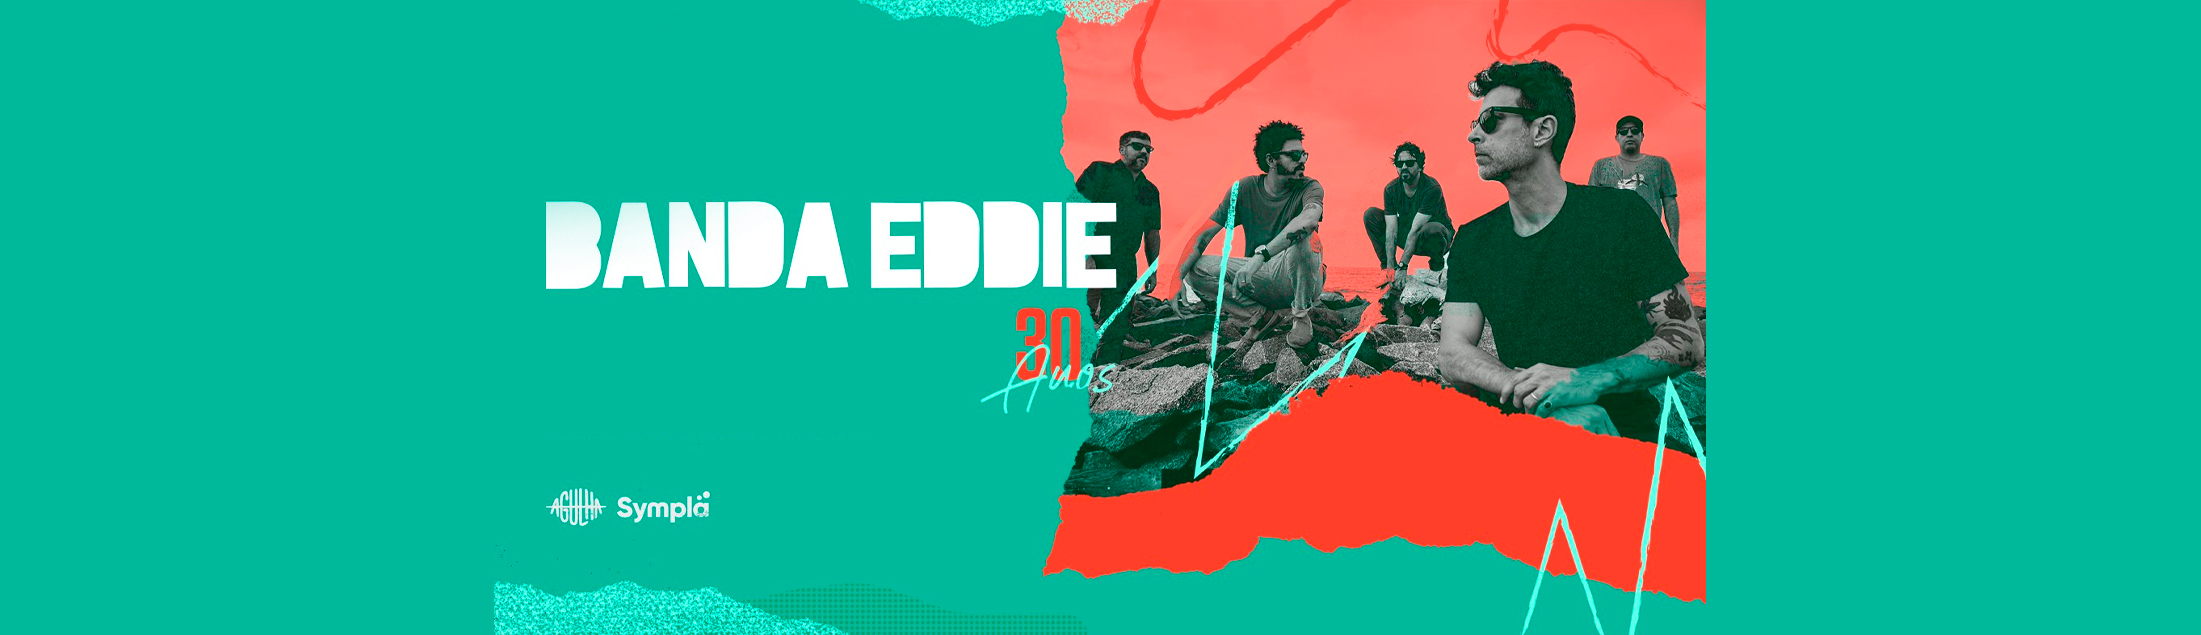 Banda Eddie comemora 30 anos de carreira no palco do Mundo Pensante